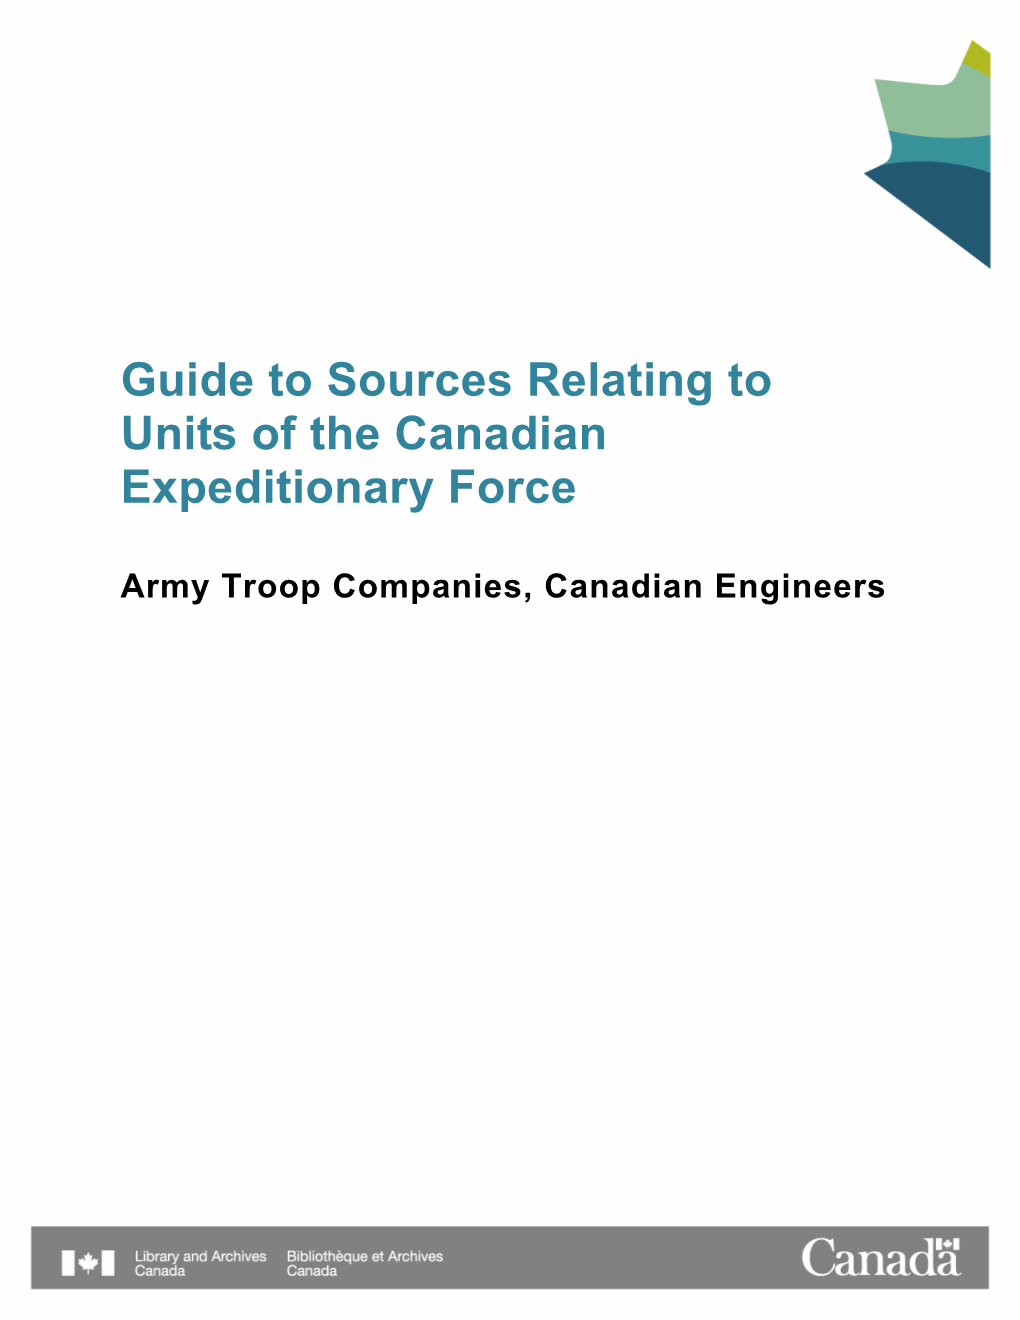 Army Troop Companies, Canadian Engineers